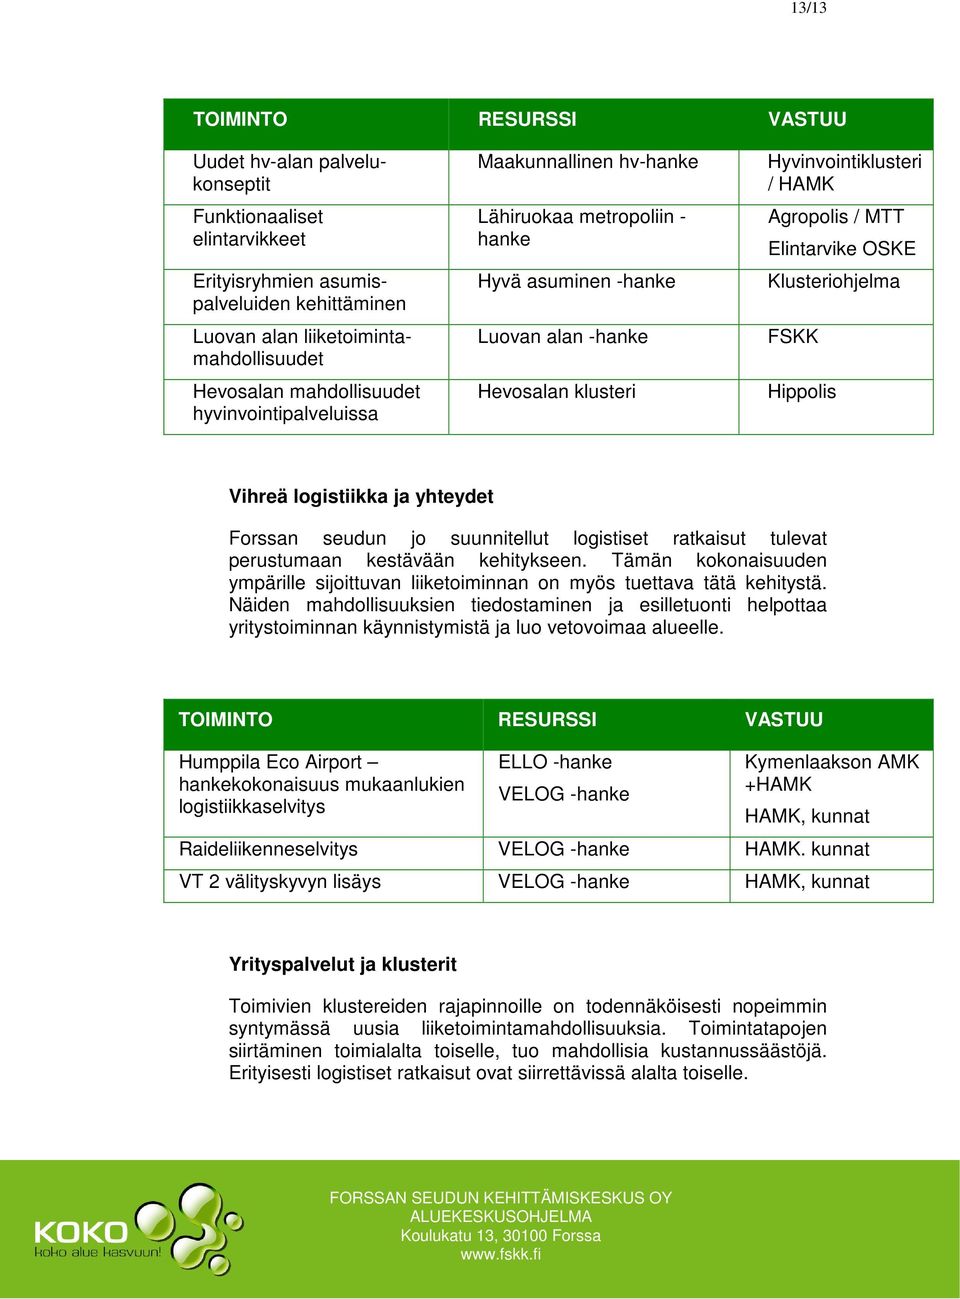 Elintarvike OSKE Klusteriohjelma FSKK Hippolis Vihreä logistiikka ja yhteydet Forssan seudun jo suunnitellut logistiset ratkaisut tulevat perustumaan kestävään kehitykseen.